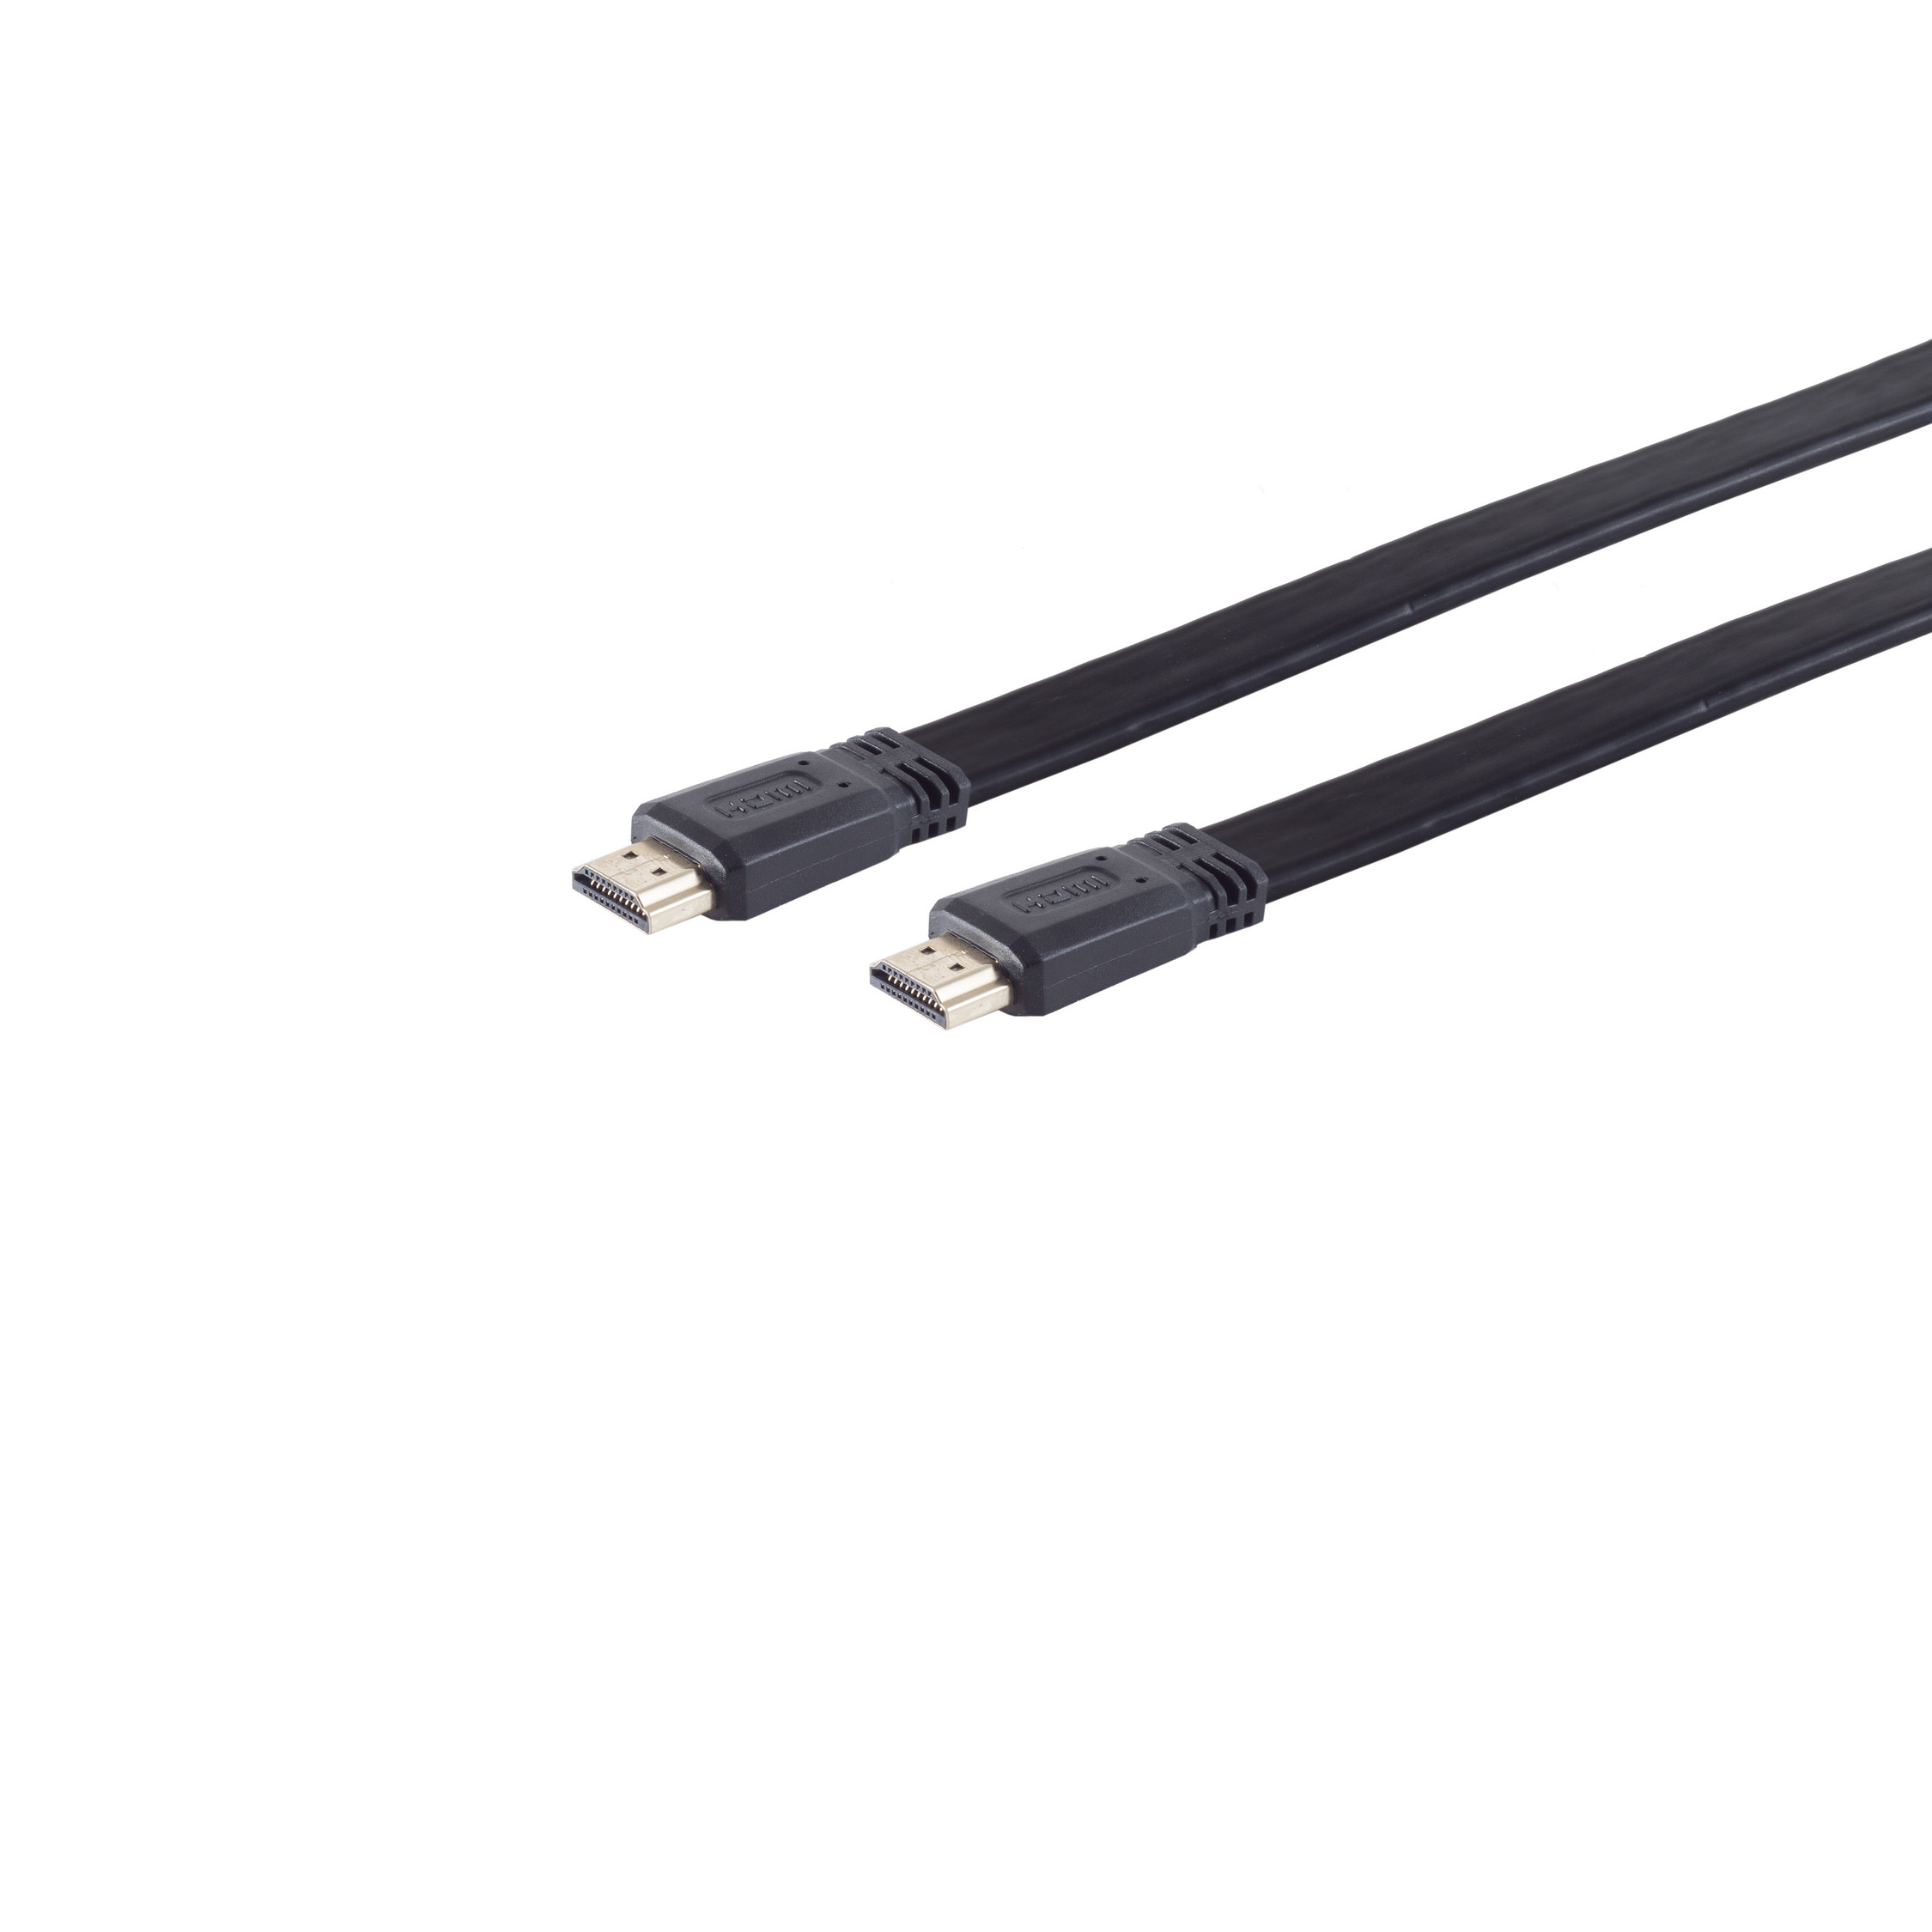 S/CONN MAXIMUM CONNECTIVITY verg. A-St HEAC HDMI / A-St. FLACH Kabel HDMI HDMI 5m